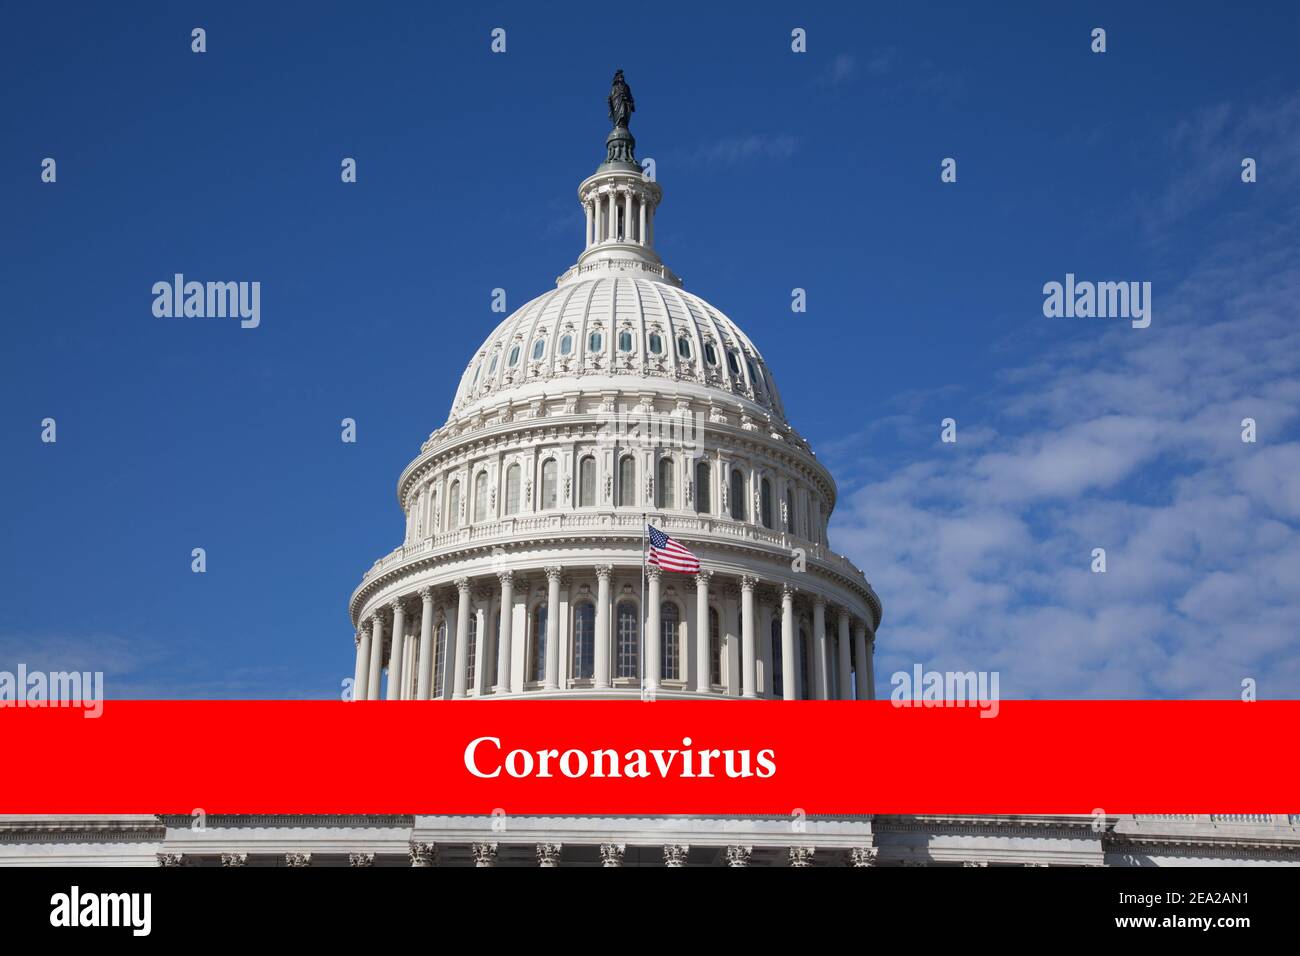 Die Inschrift auf rotem Hintergrund Coronavirus auf dem Hintergrund des Gebäudes des US-Kongressgebäudes des Capitol-Gebäudes an einem klaren Tag. Stockfoto